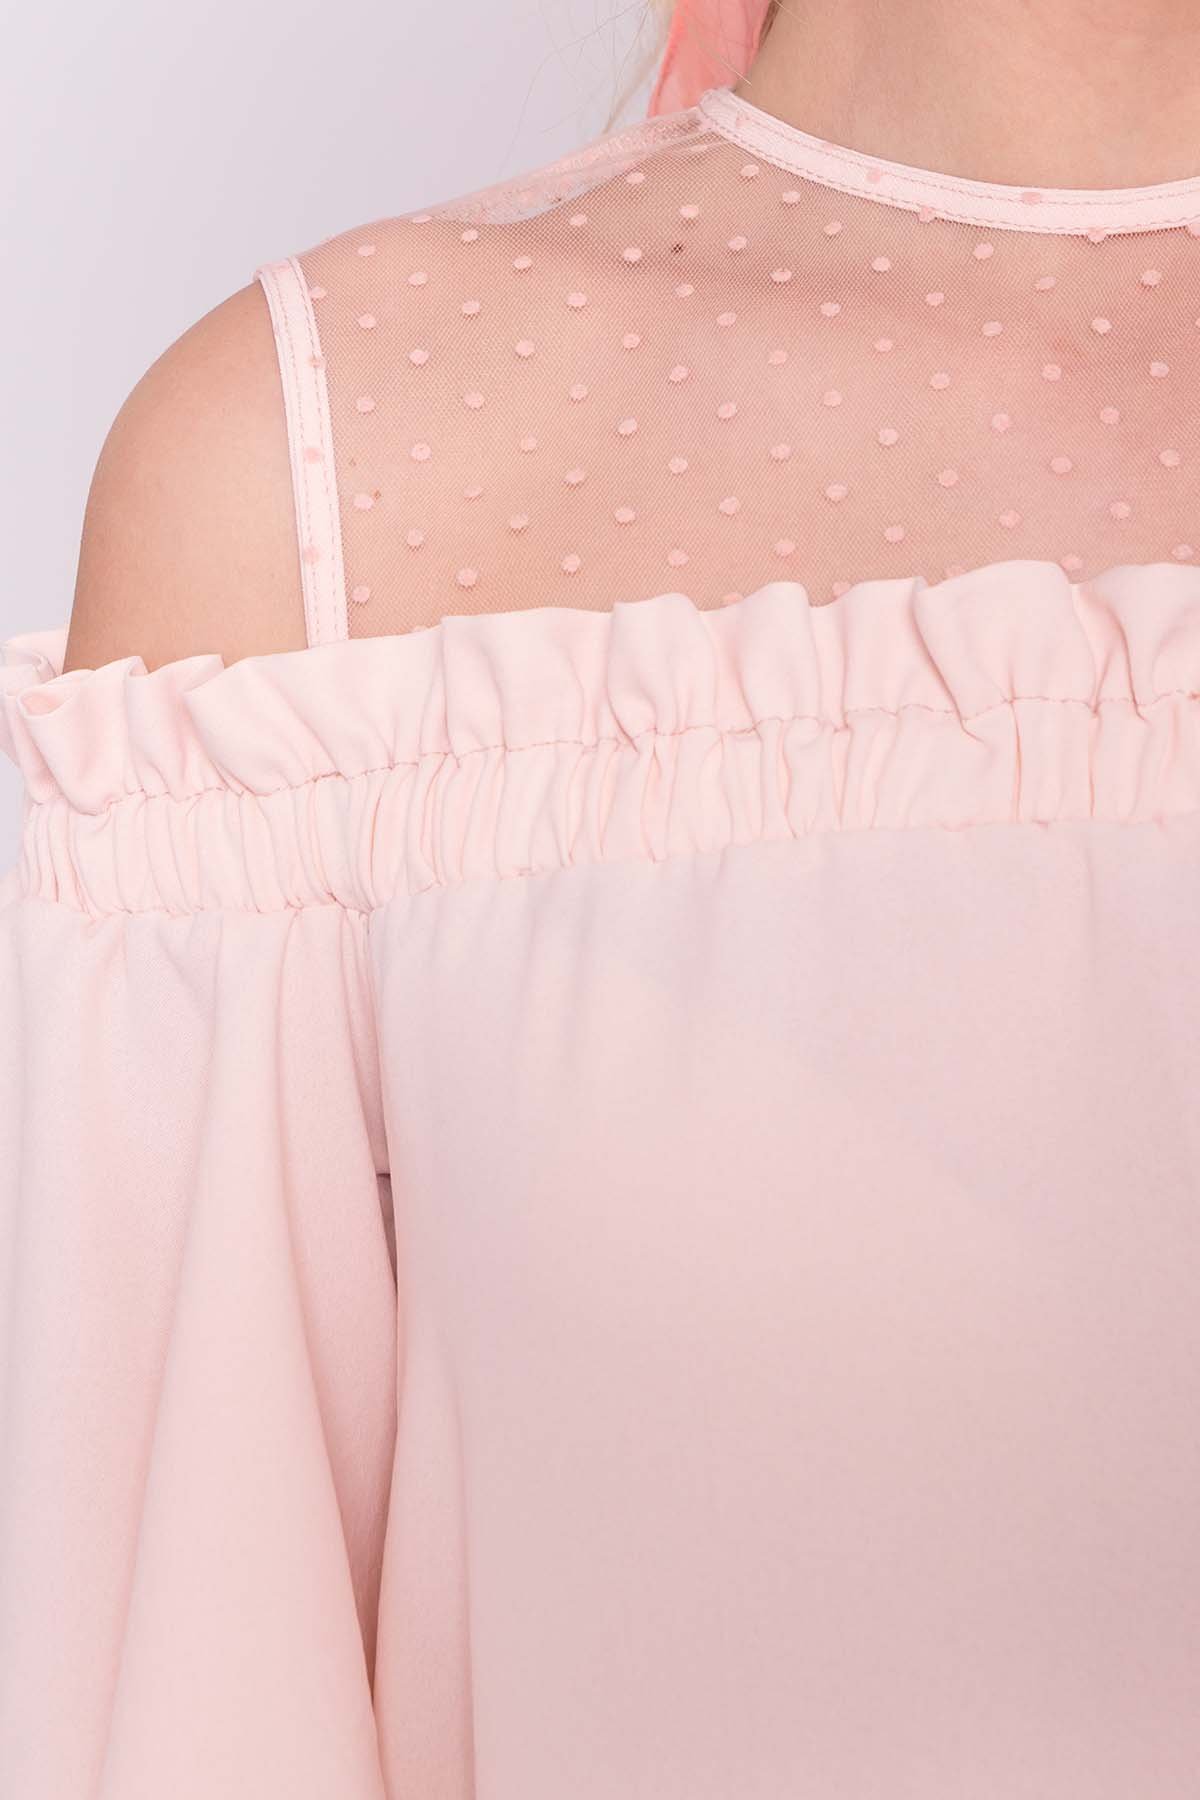 Платье Молена 7138 Цвет: Розовый Светлый